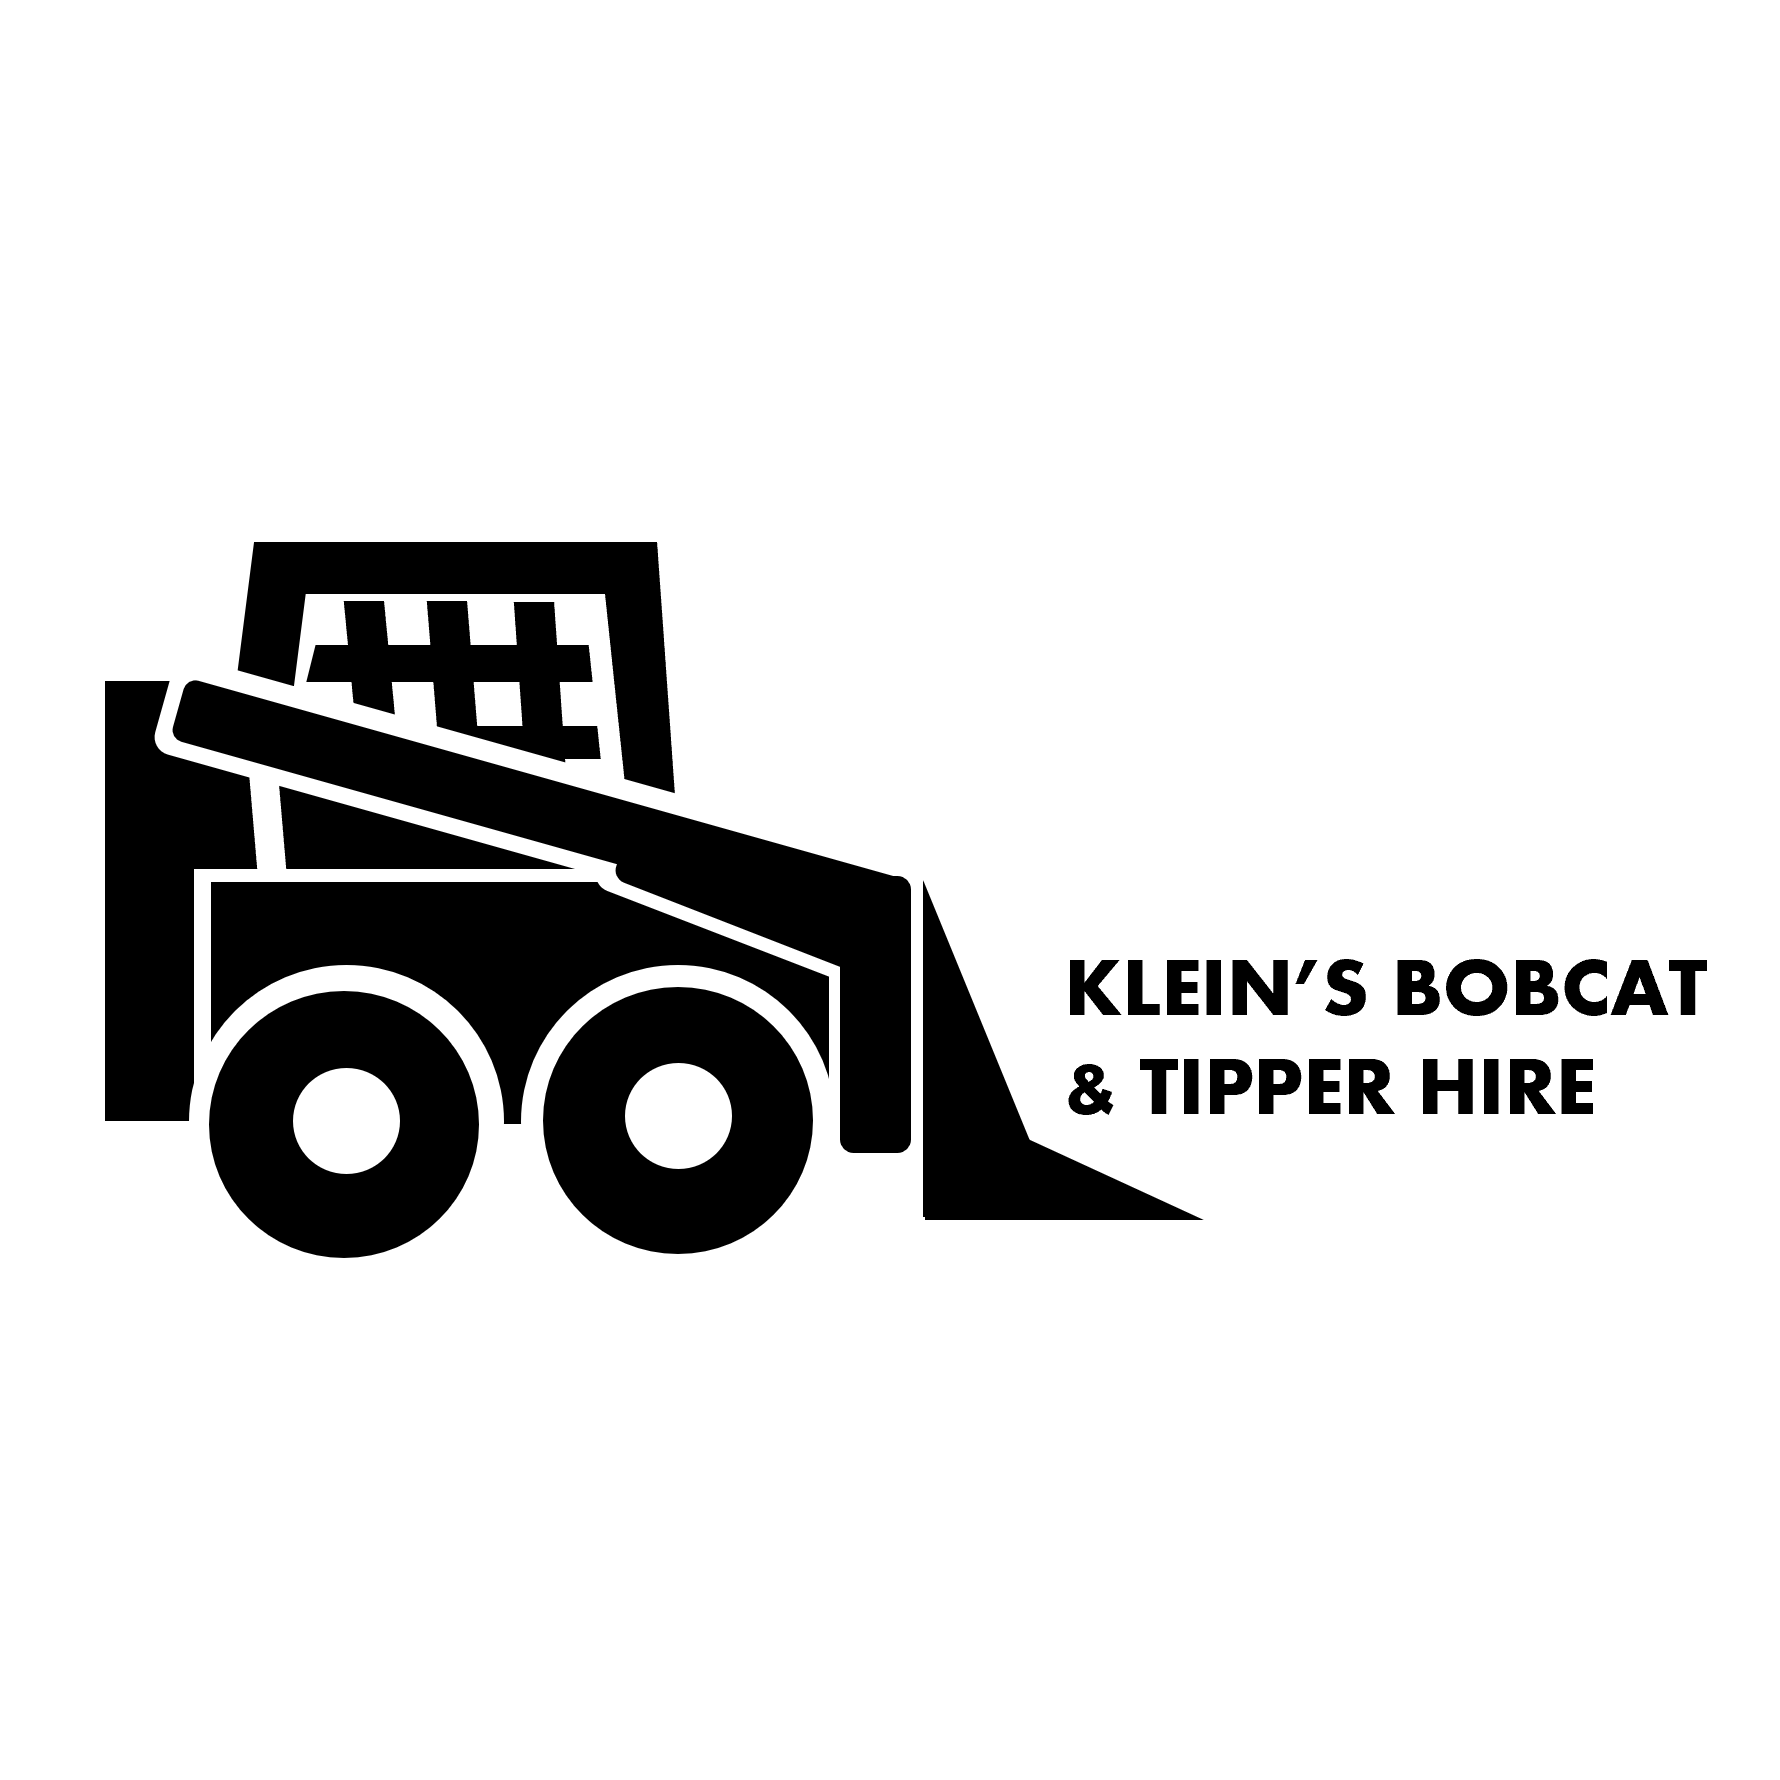 Klein's Bobcat & Tipper Hire - Narre Warren North, VIC - 0419 414 293 | ShowMeLocal.com